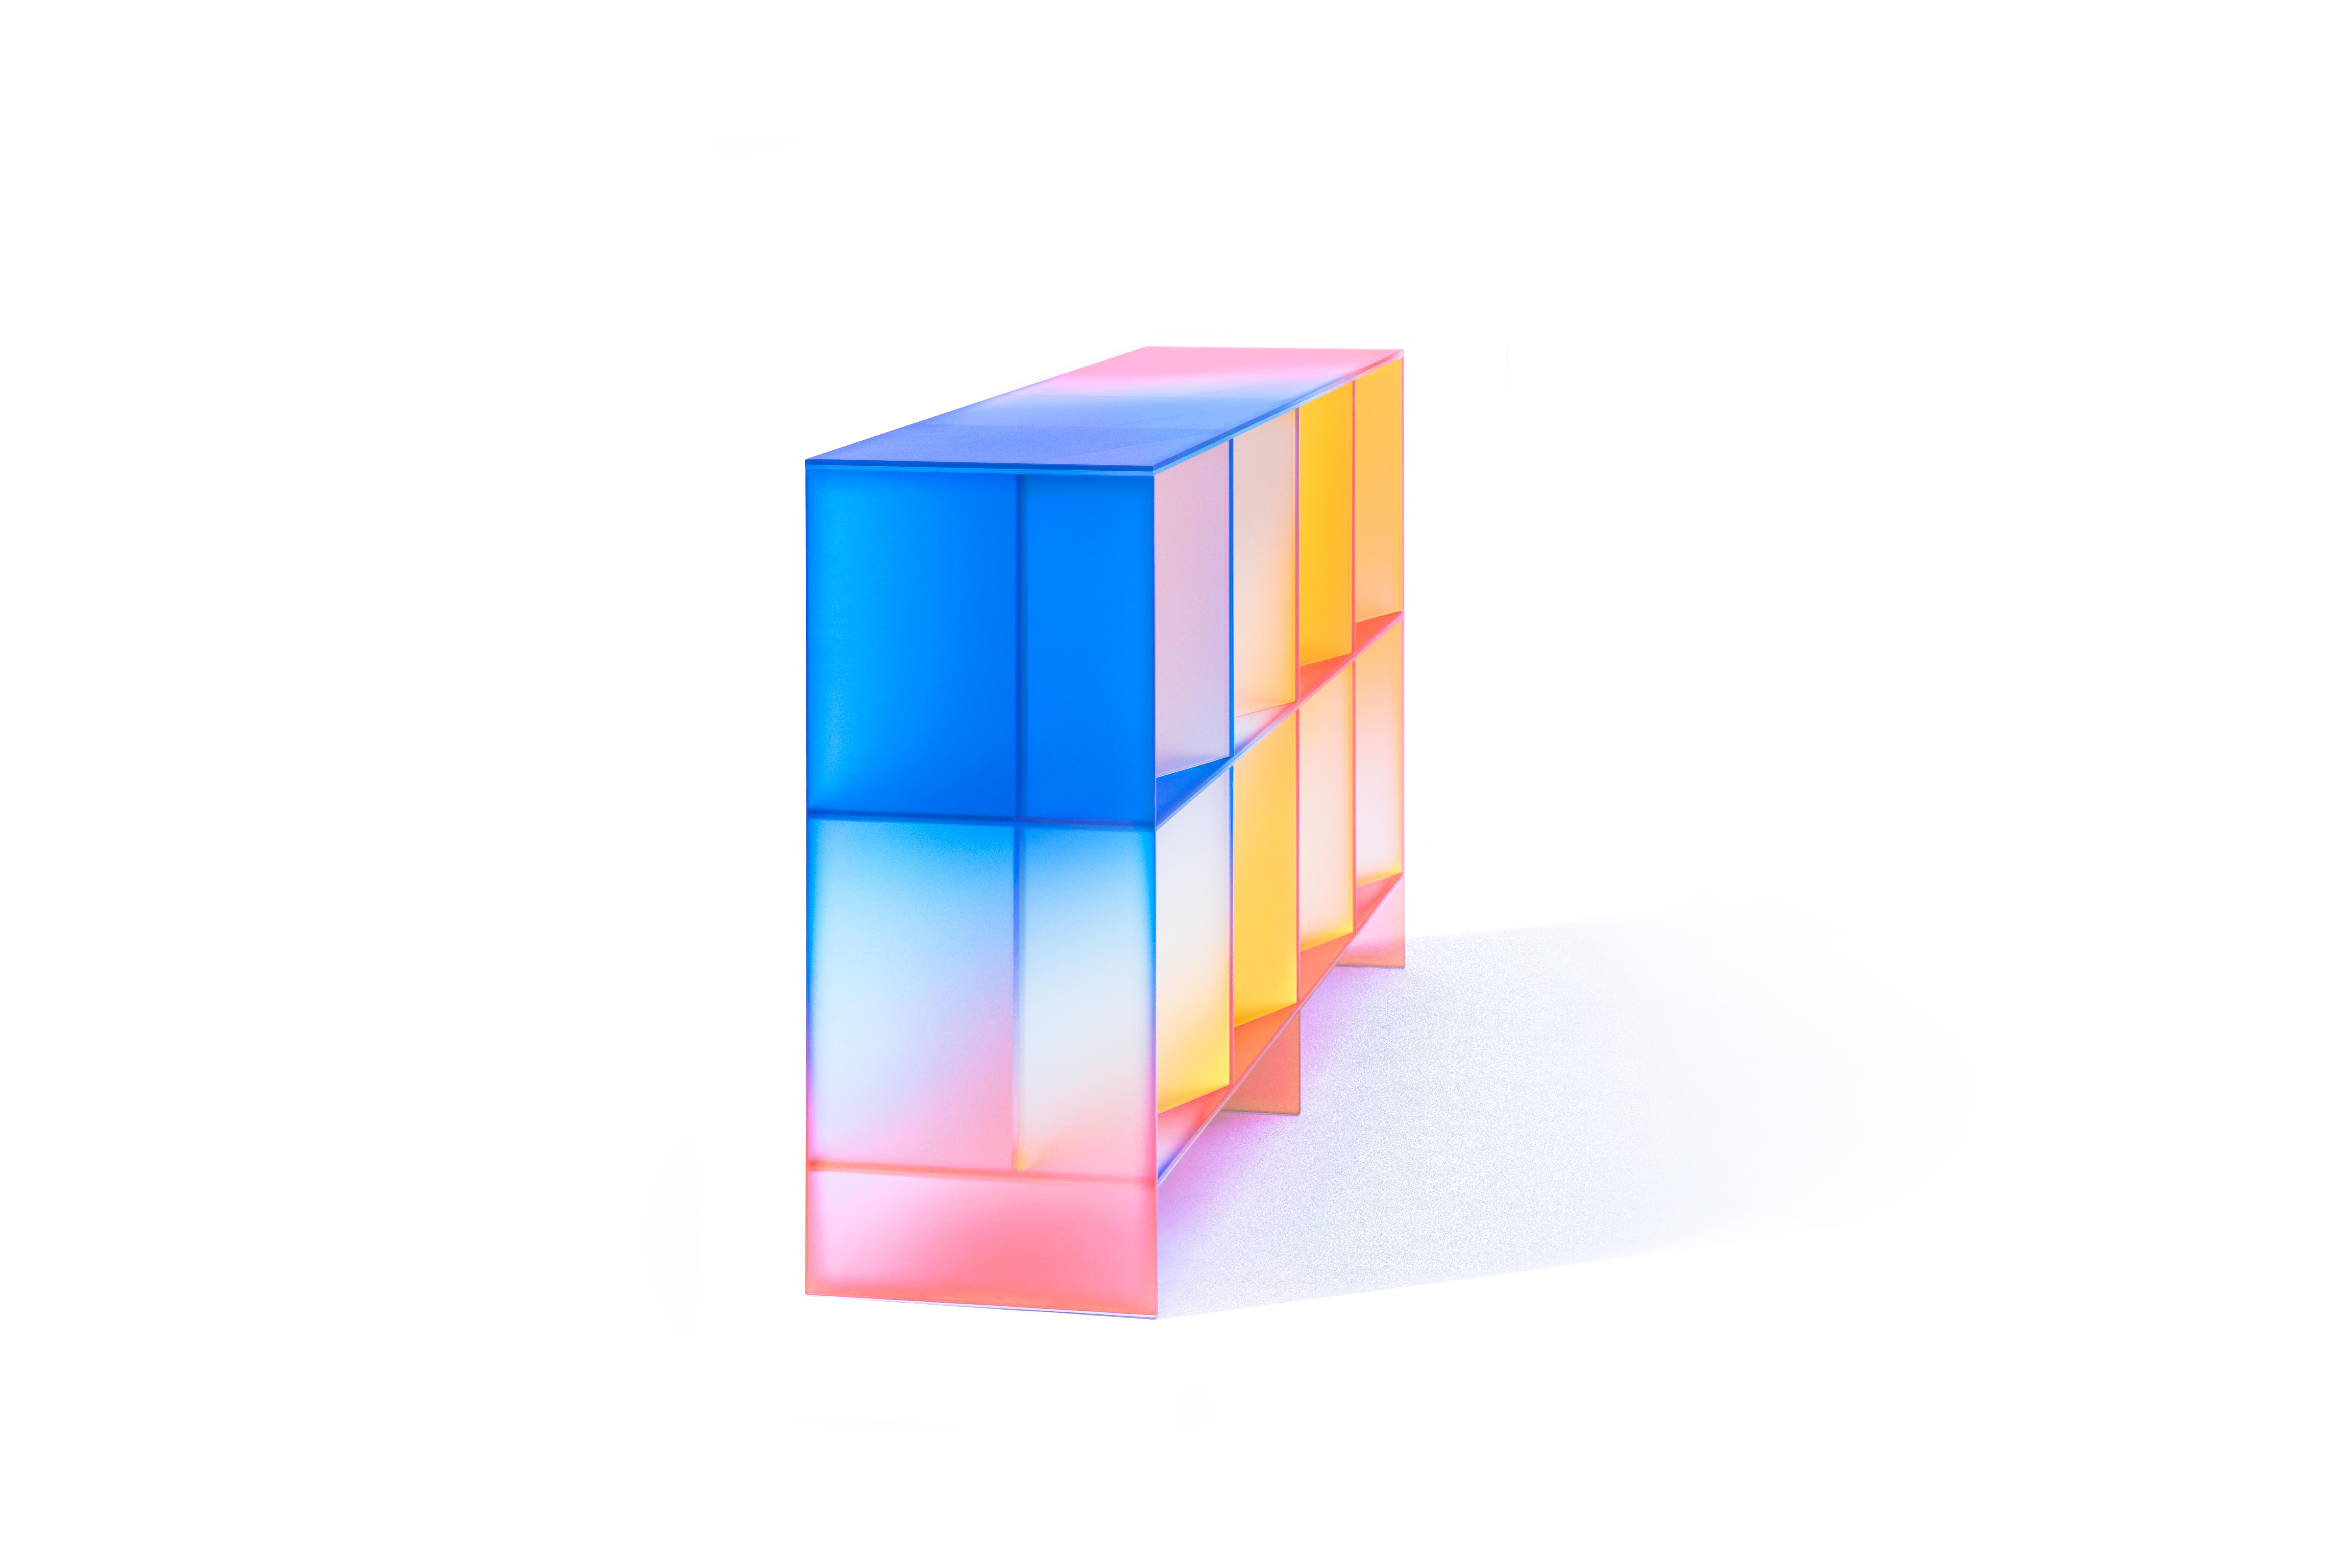 hALO' Kollektion von Buzao - Schrank
Laminiertes dichroitisches Glas, Farbverlauf 
Maße: 166 x 40 x H 98 cm

Das Studio Buzao aus Guangzhou (China) erforscht Innovationen im Bereich Möbel- und Beleuchtungsdesign. Von Marmor bis Lavastein, von